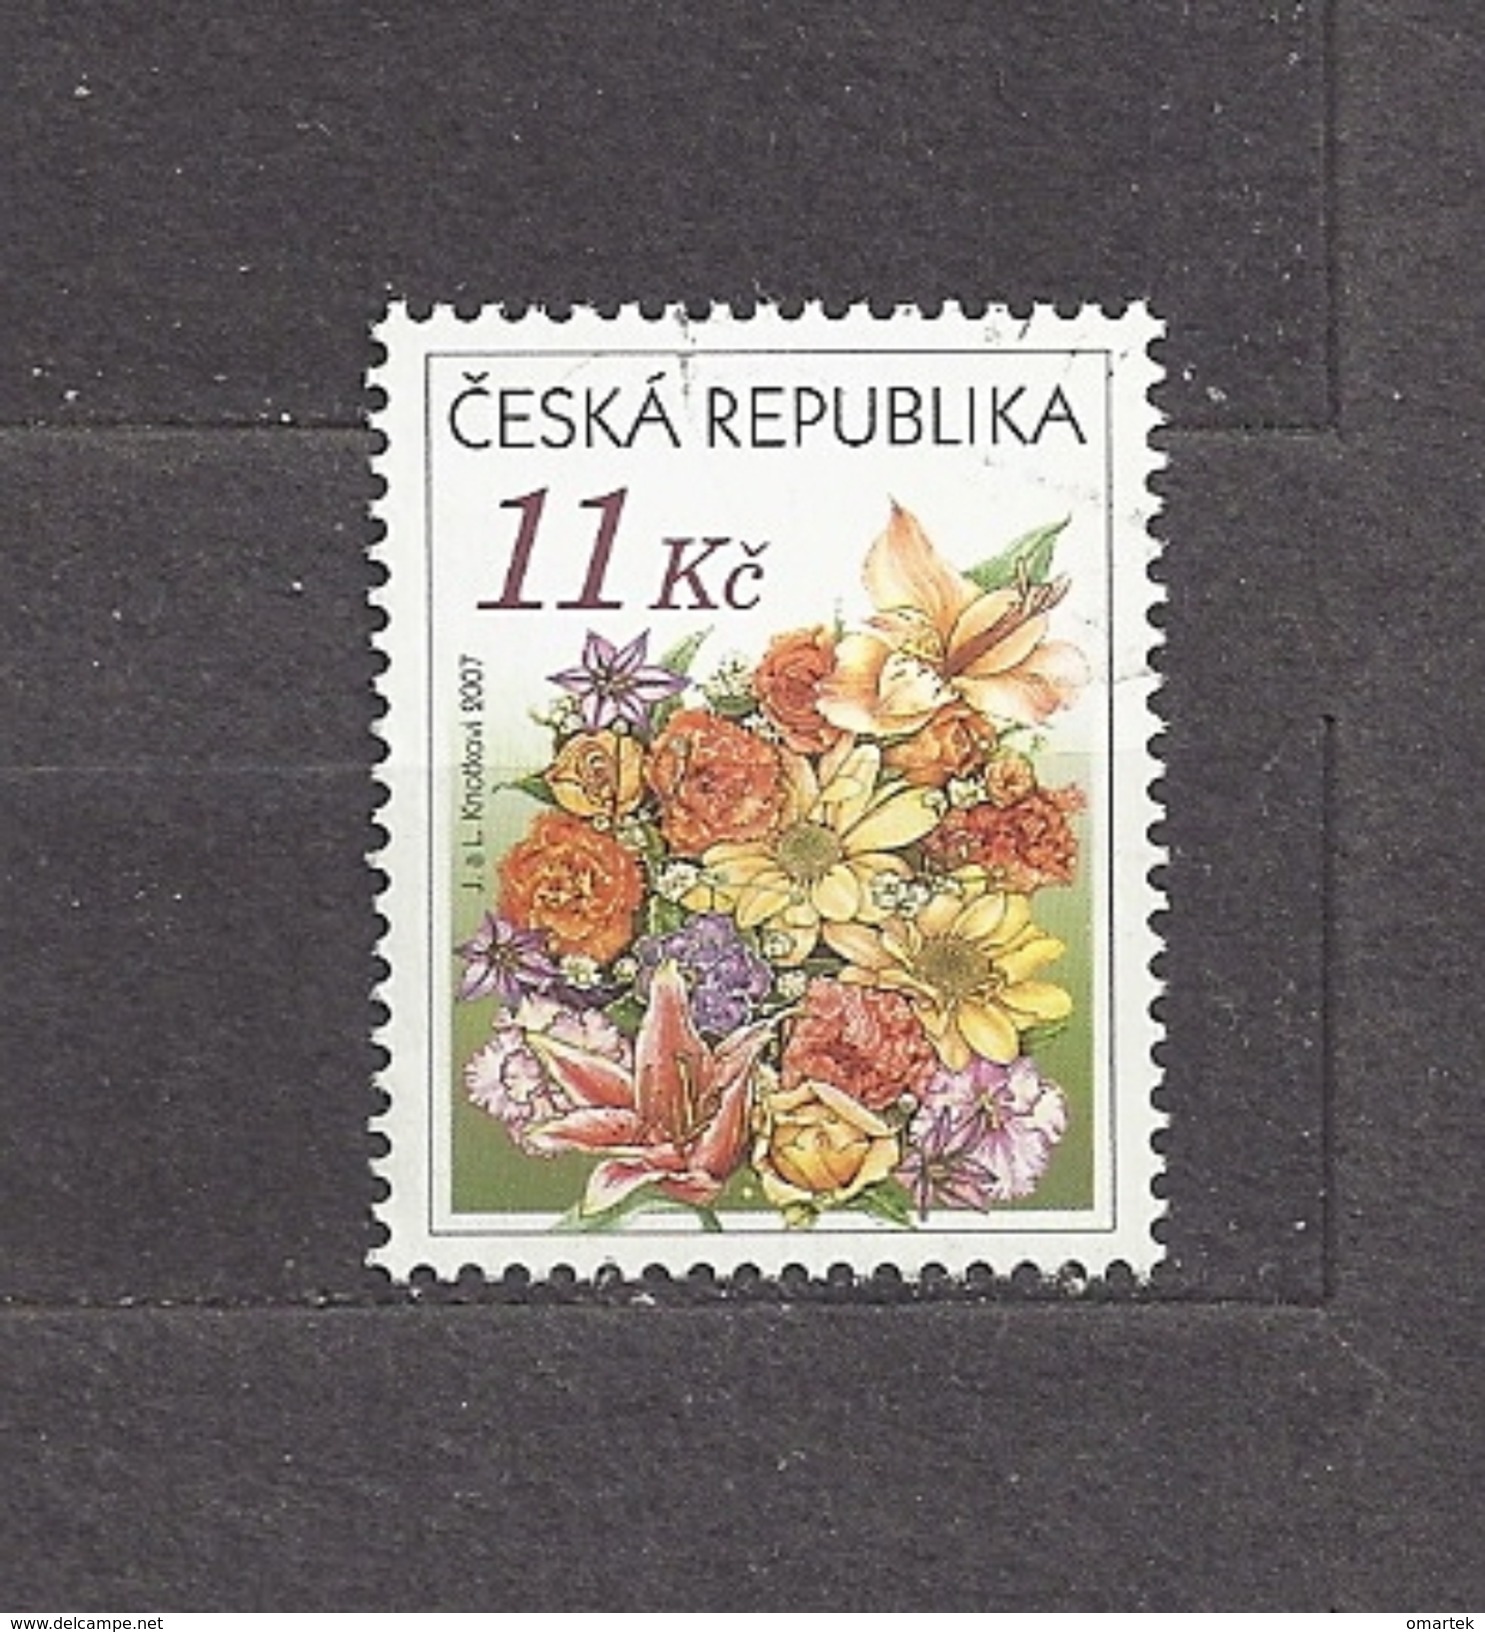 Czech Republic Tschechische Republik 2007 ⊙ Mi 510 Sc 3340 Flowers  Congratulation Bouquet. Day Of Issue:  26.3.2007. - Gebruikt